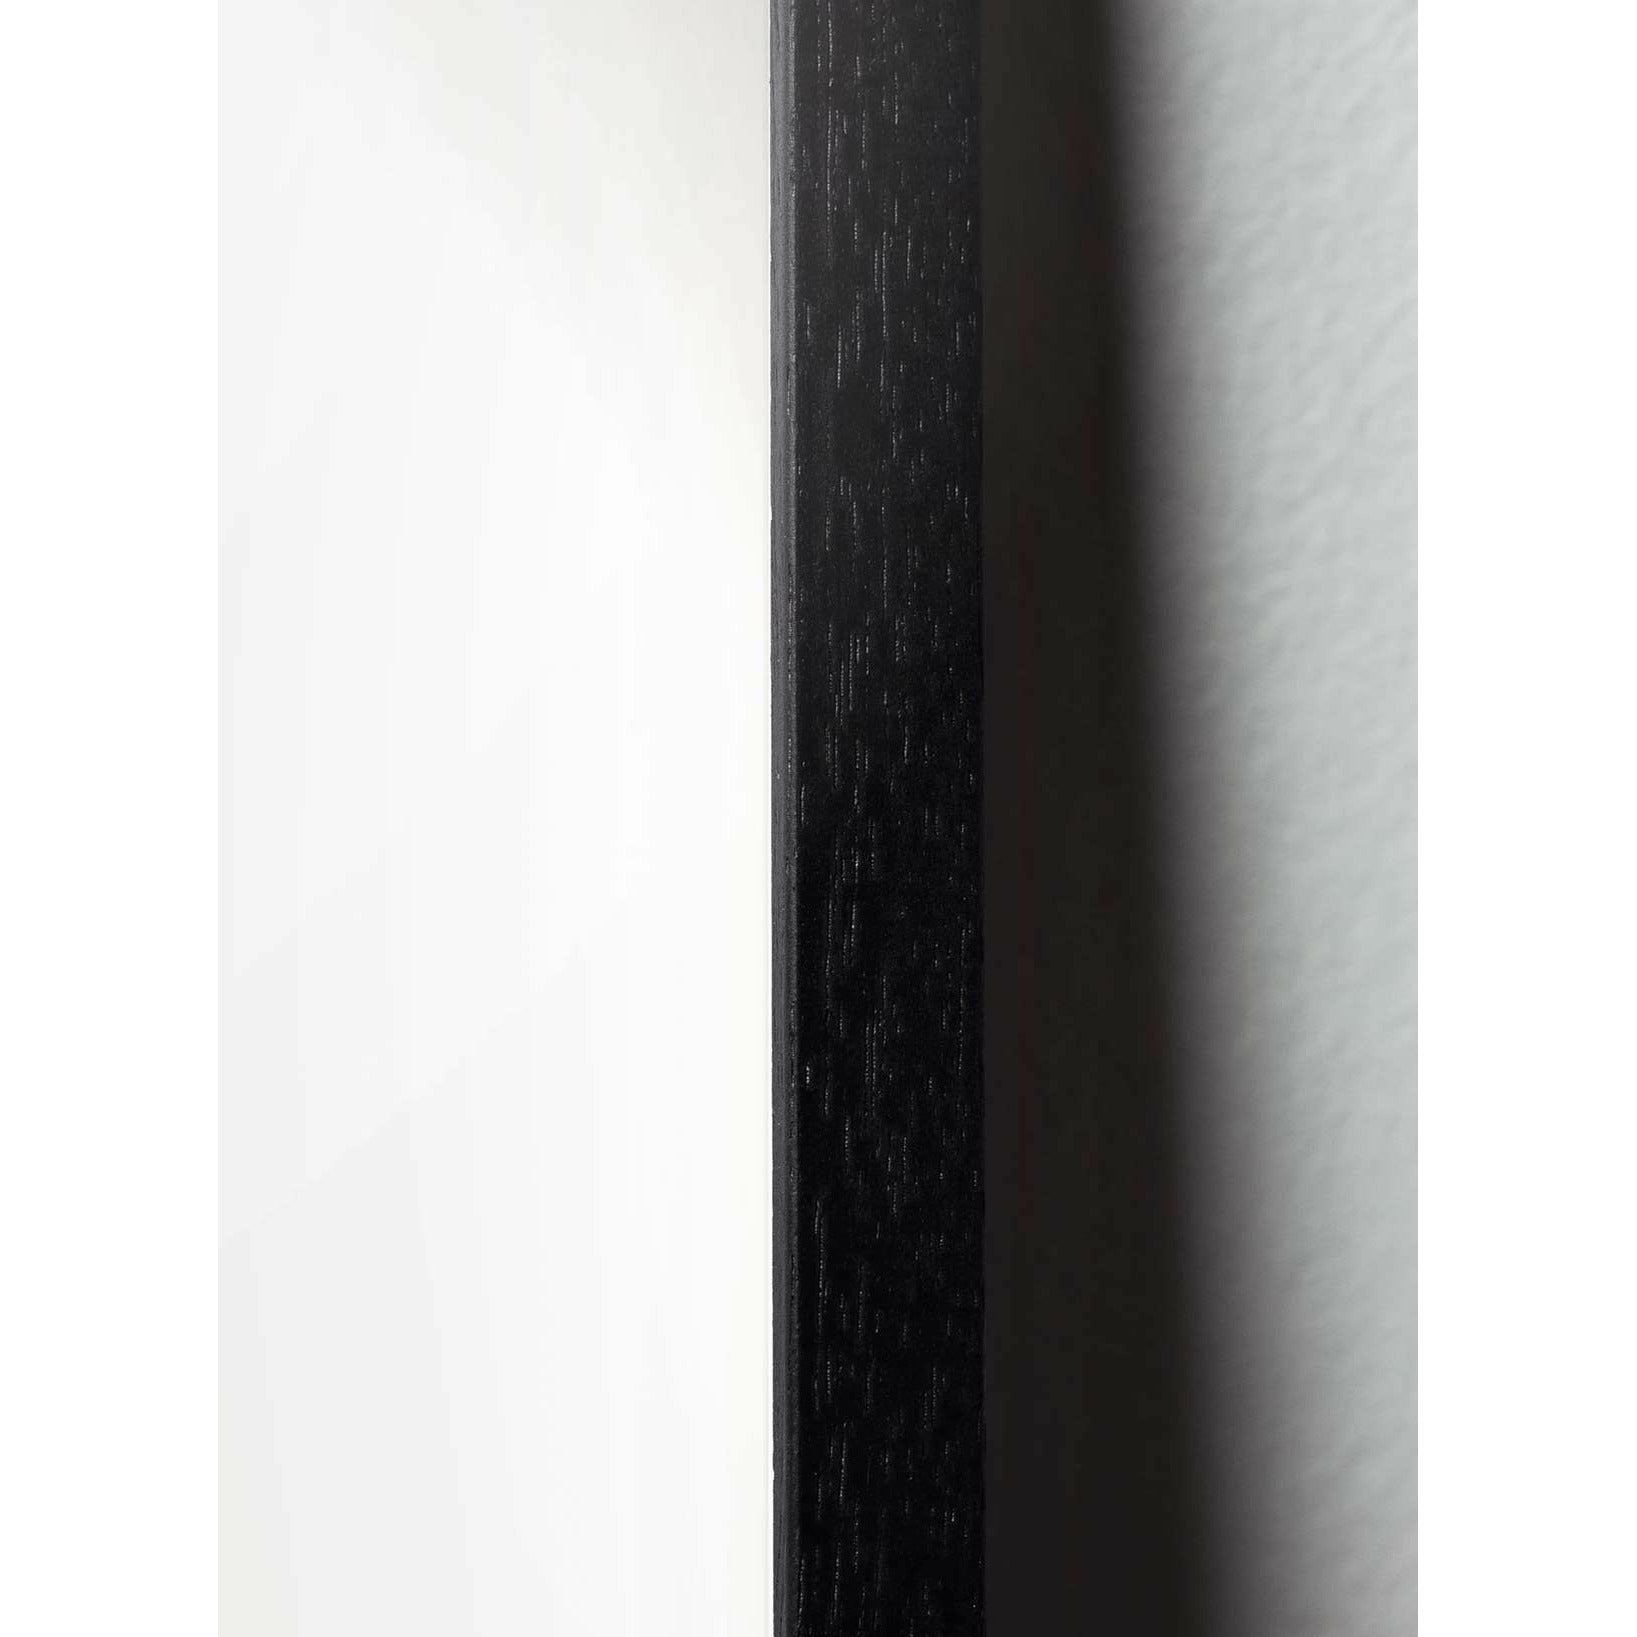 Brainchild Drops Classic Poster, Rahmen aus schwarz lackiertem Holz 30x40 cm, dunkelblauer Hintergrund